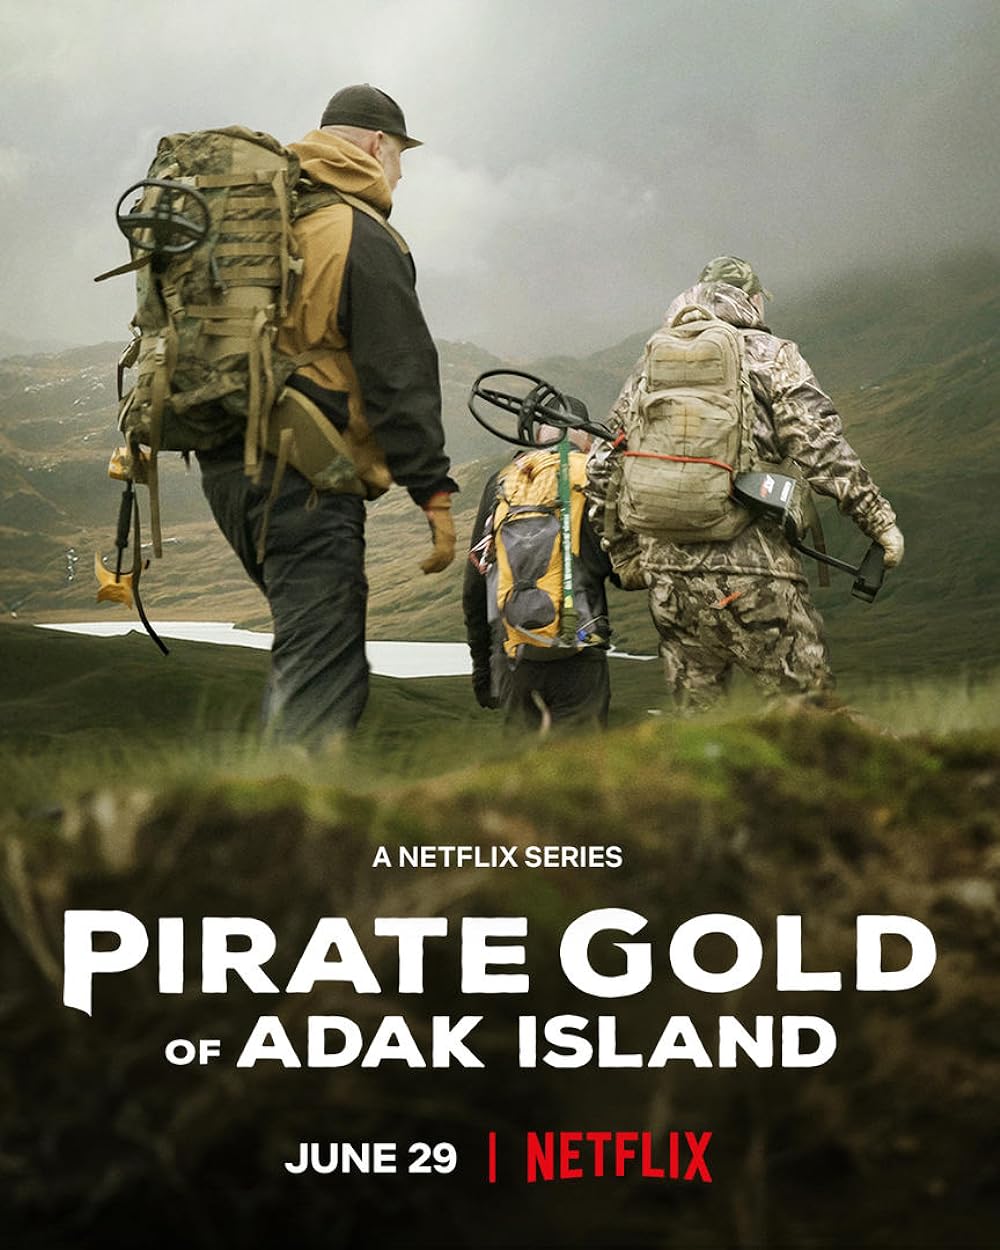 Pirate Gold of Adak